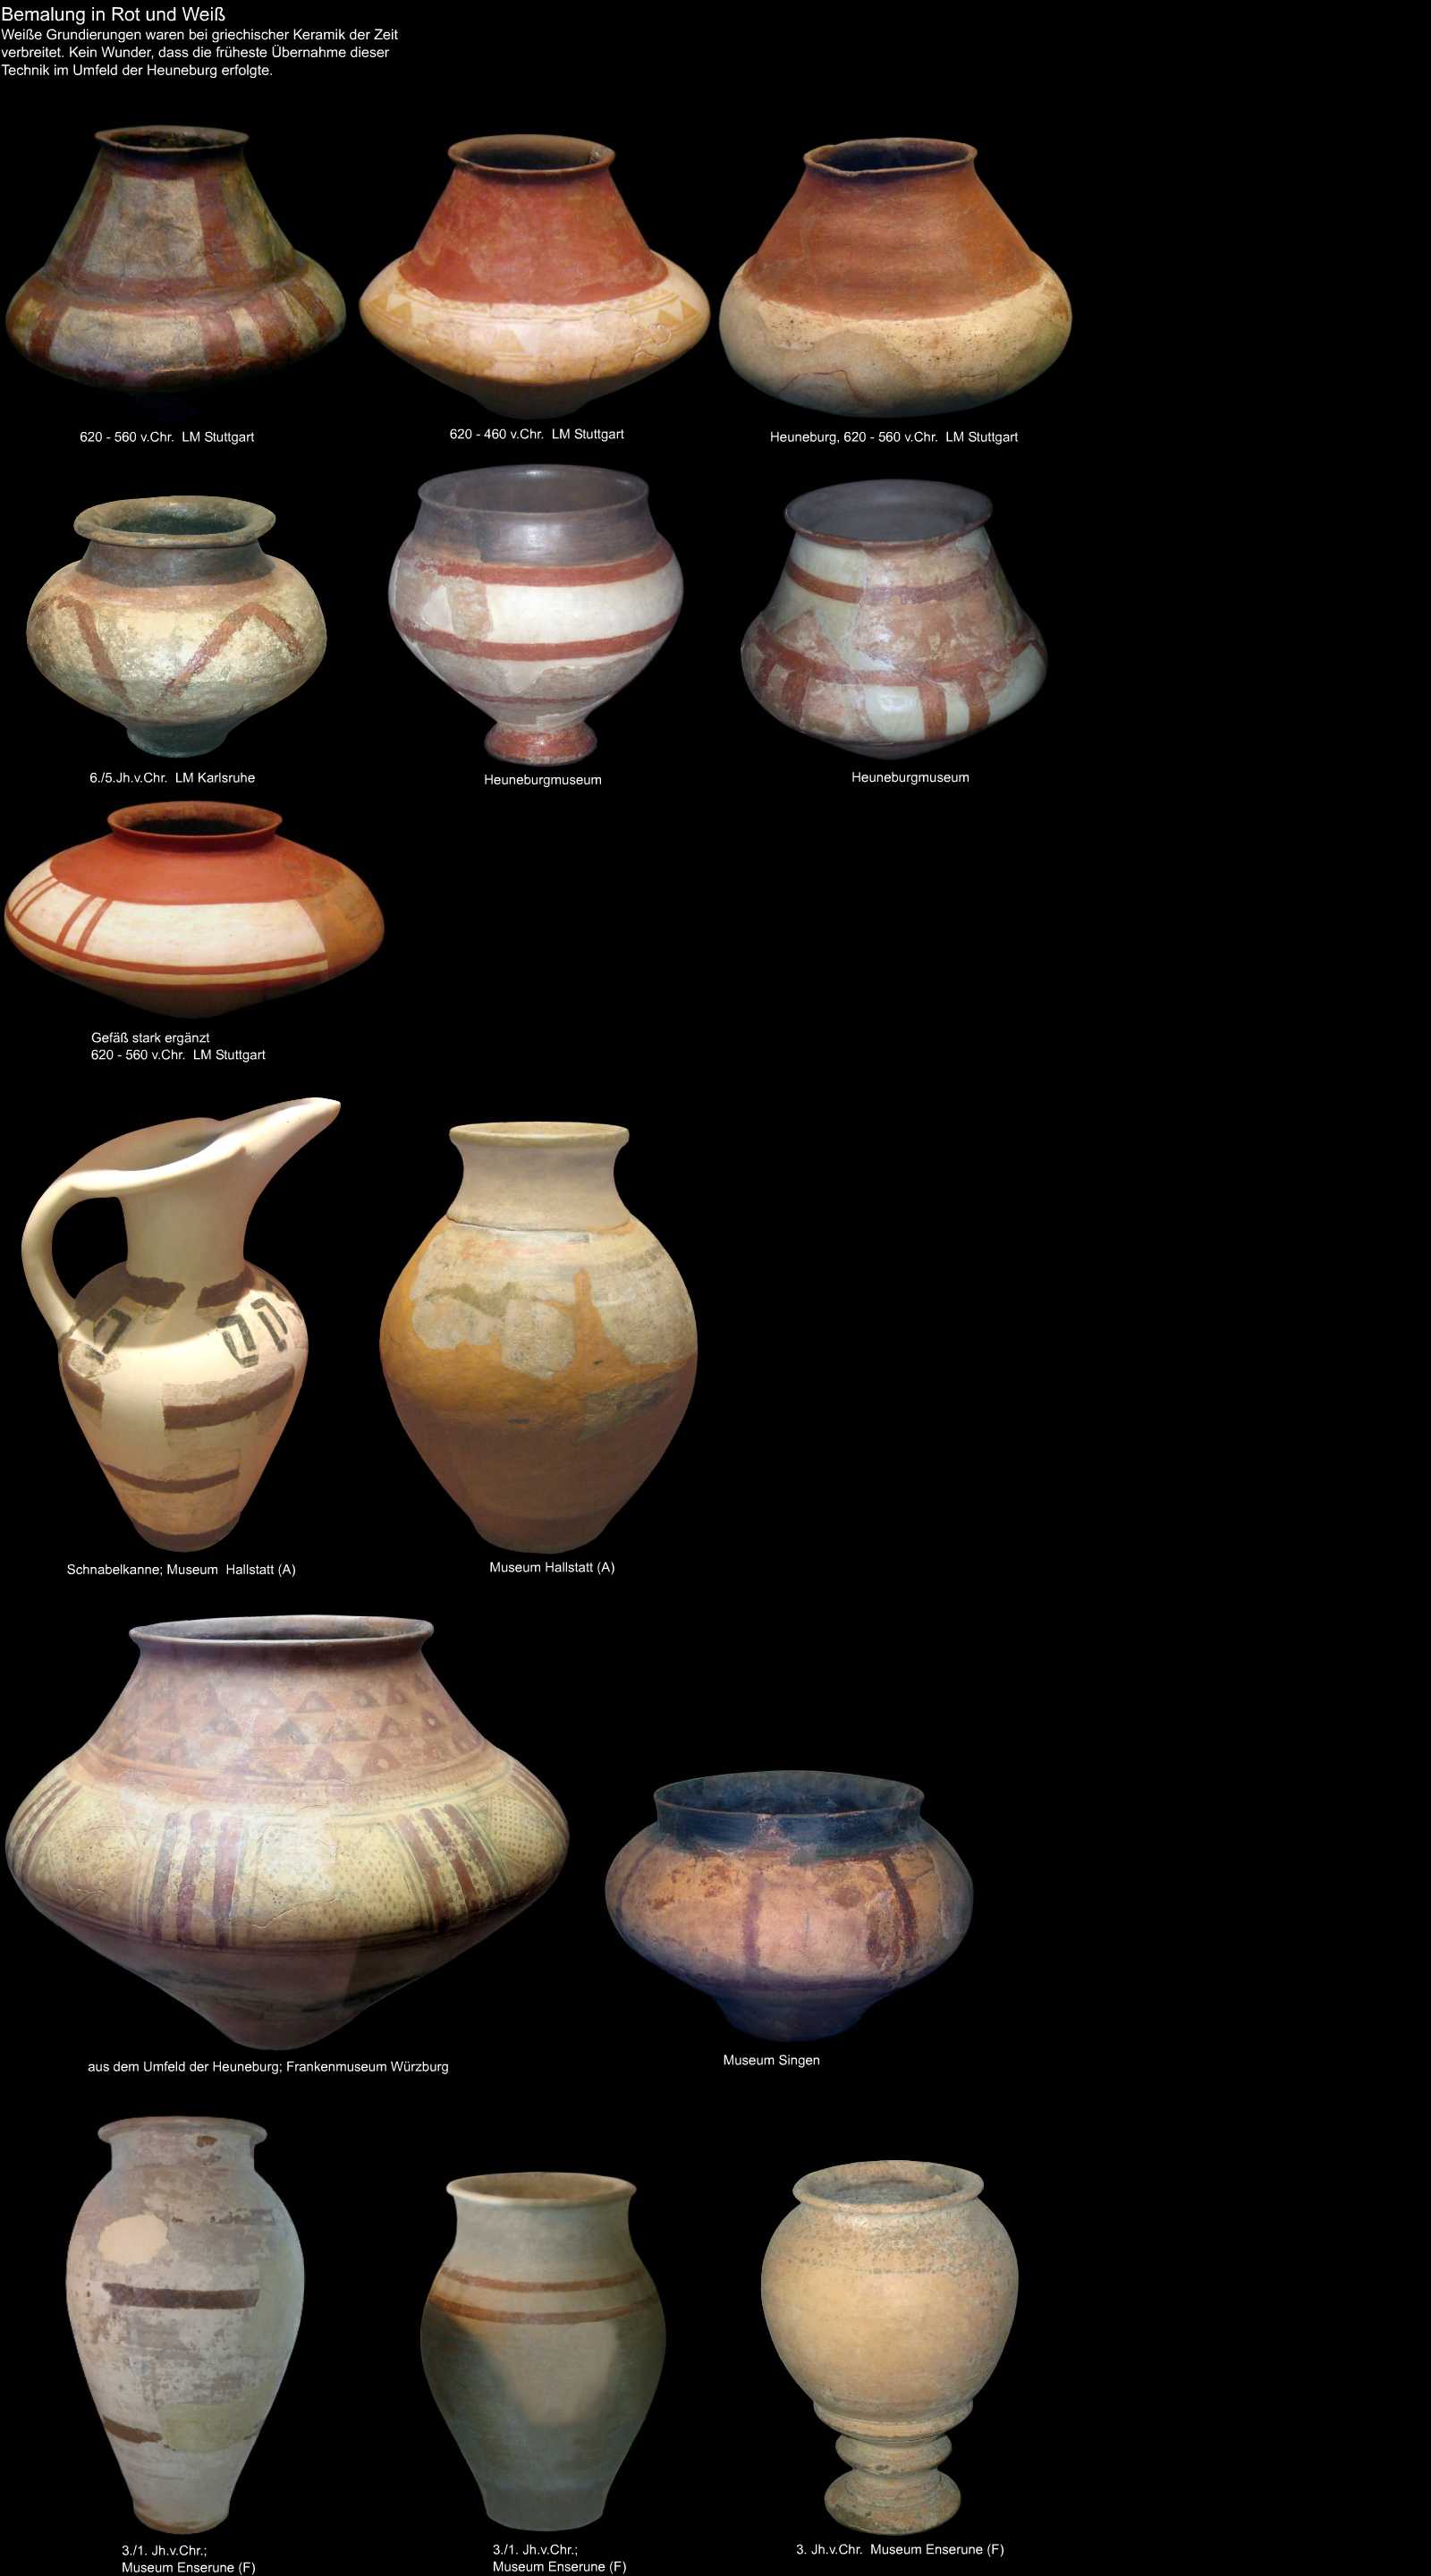 mehrfarbig bemalte keltische Keramik1